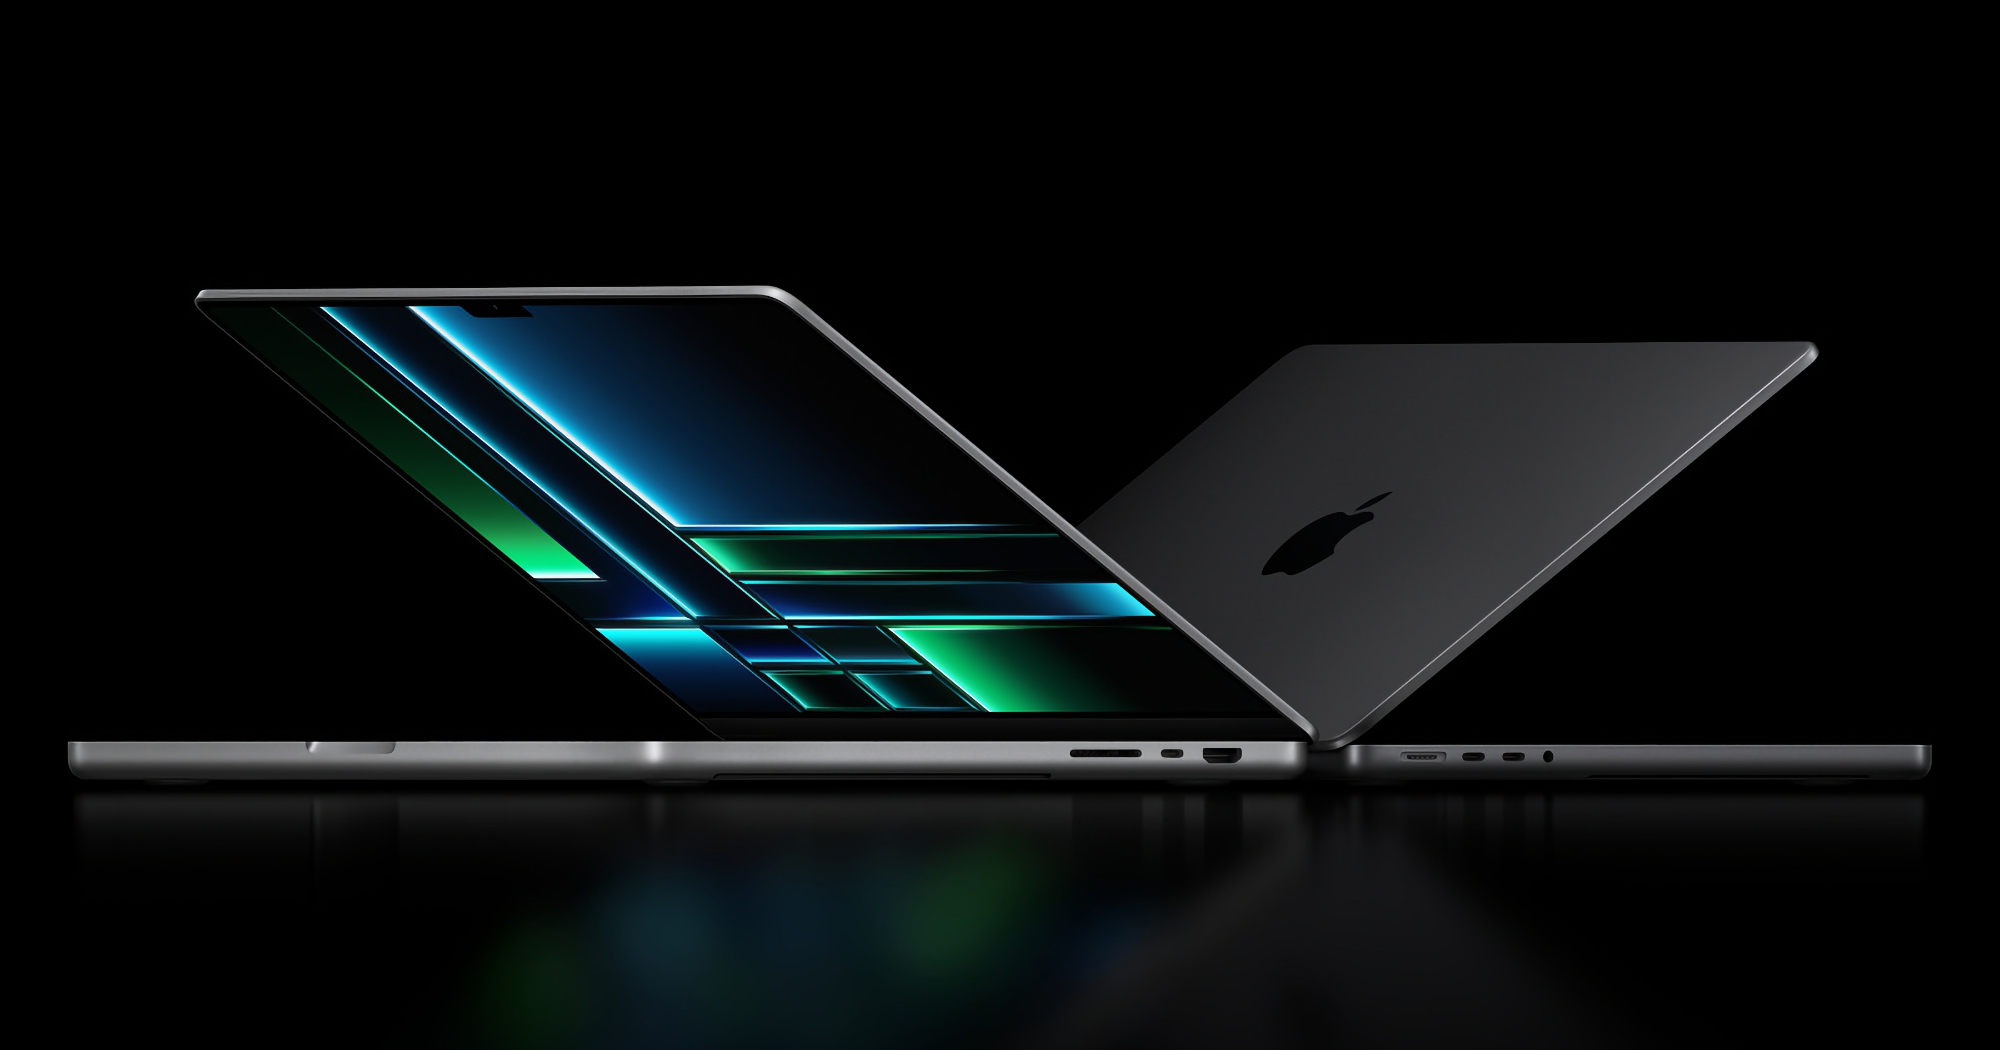 14-inch MacBook Pro met M1 Pro-chip en 512 GB SSD te koop bij Amazon voor € 249 korting.